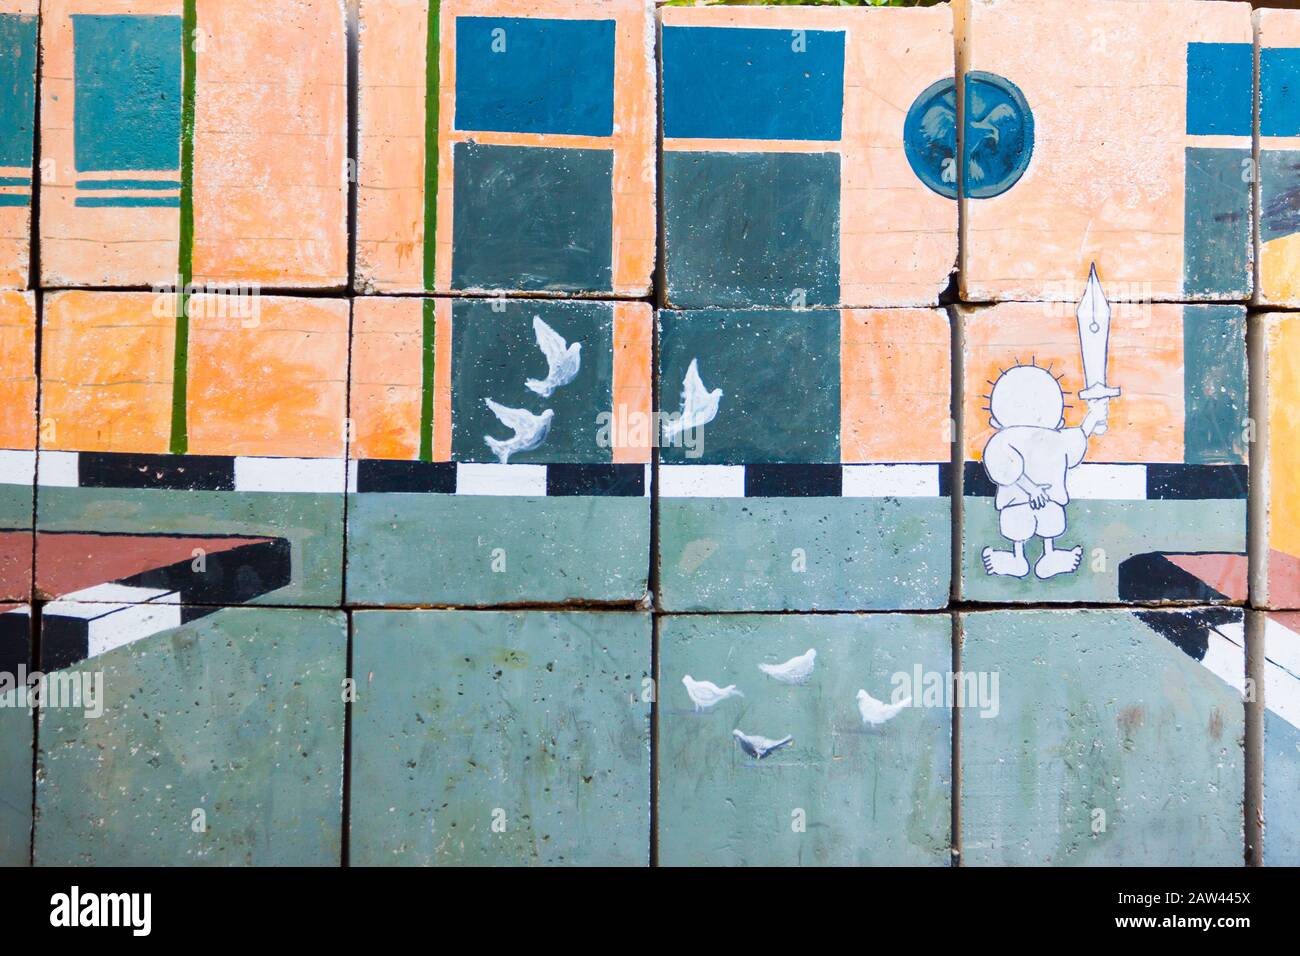 Egypte, le Caire, graffitis de la révolution égyptienne. Trompe-l'oeil peint sur de grands blocs de béton bloquant les rues. Banque D'Images